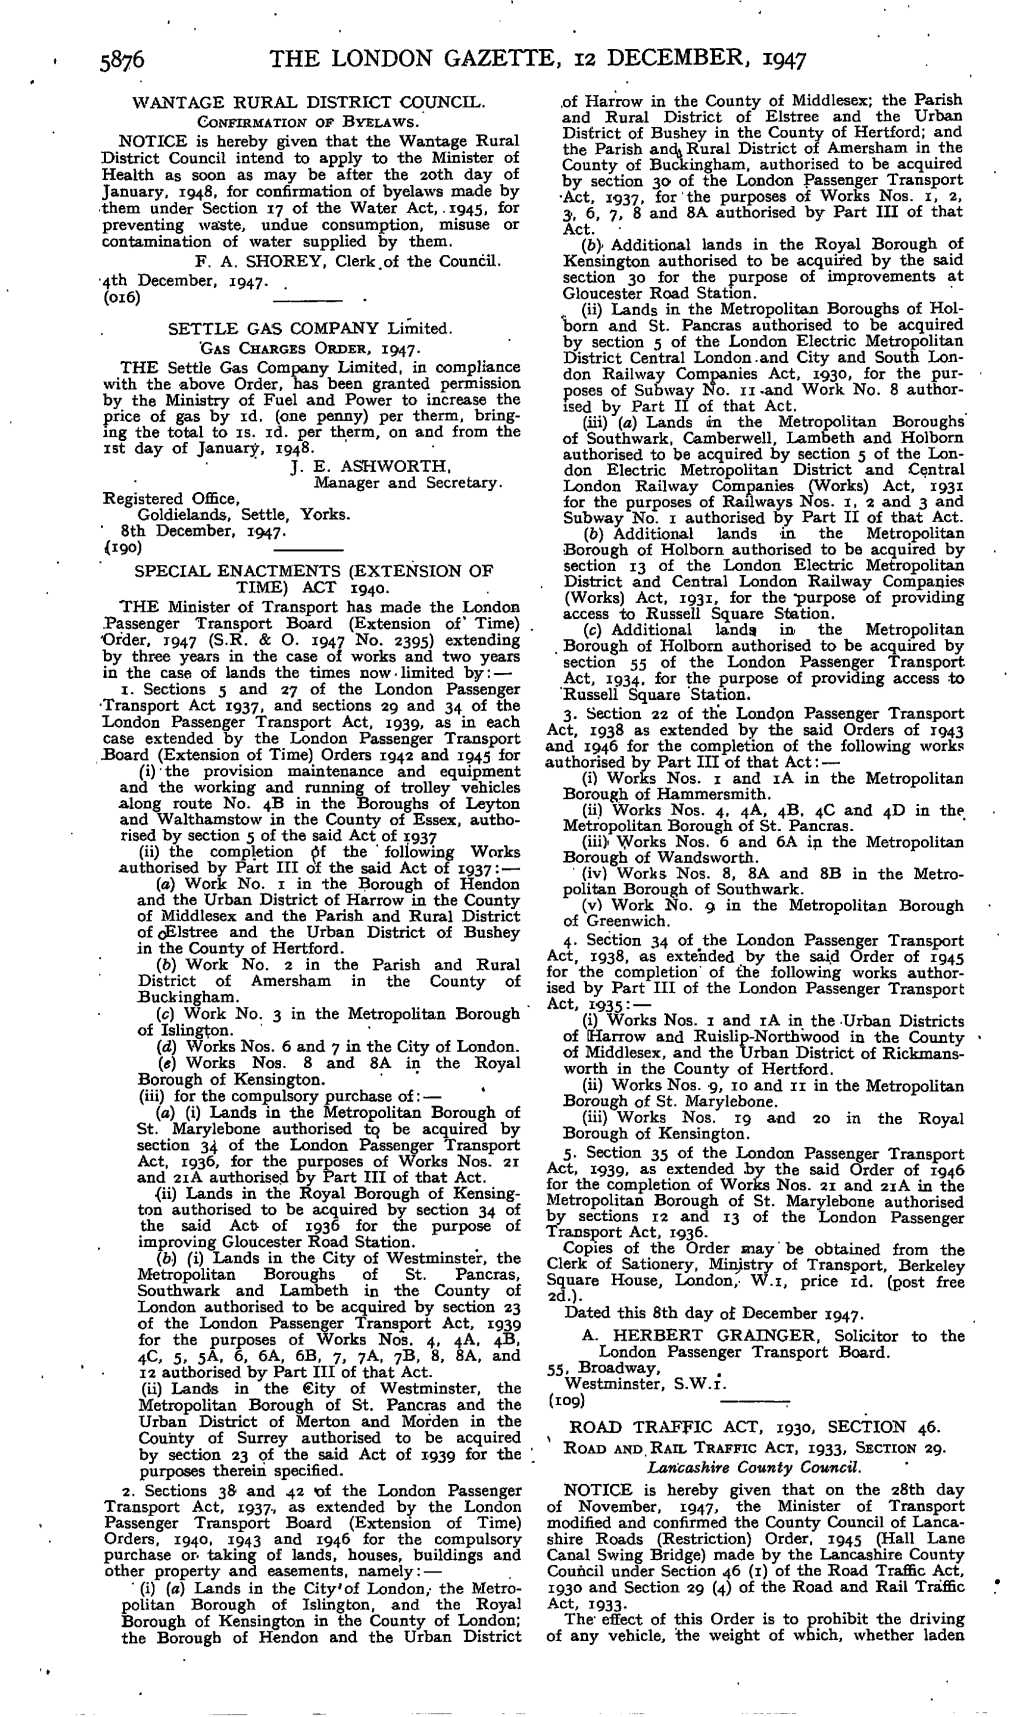 The London Gazette, 12 December, 1947 Wantage Rural District Council